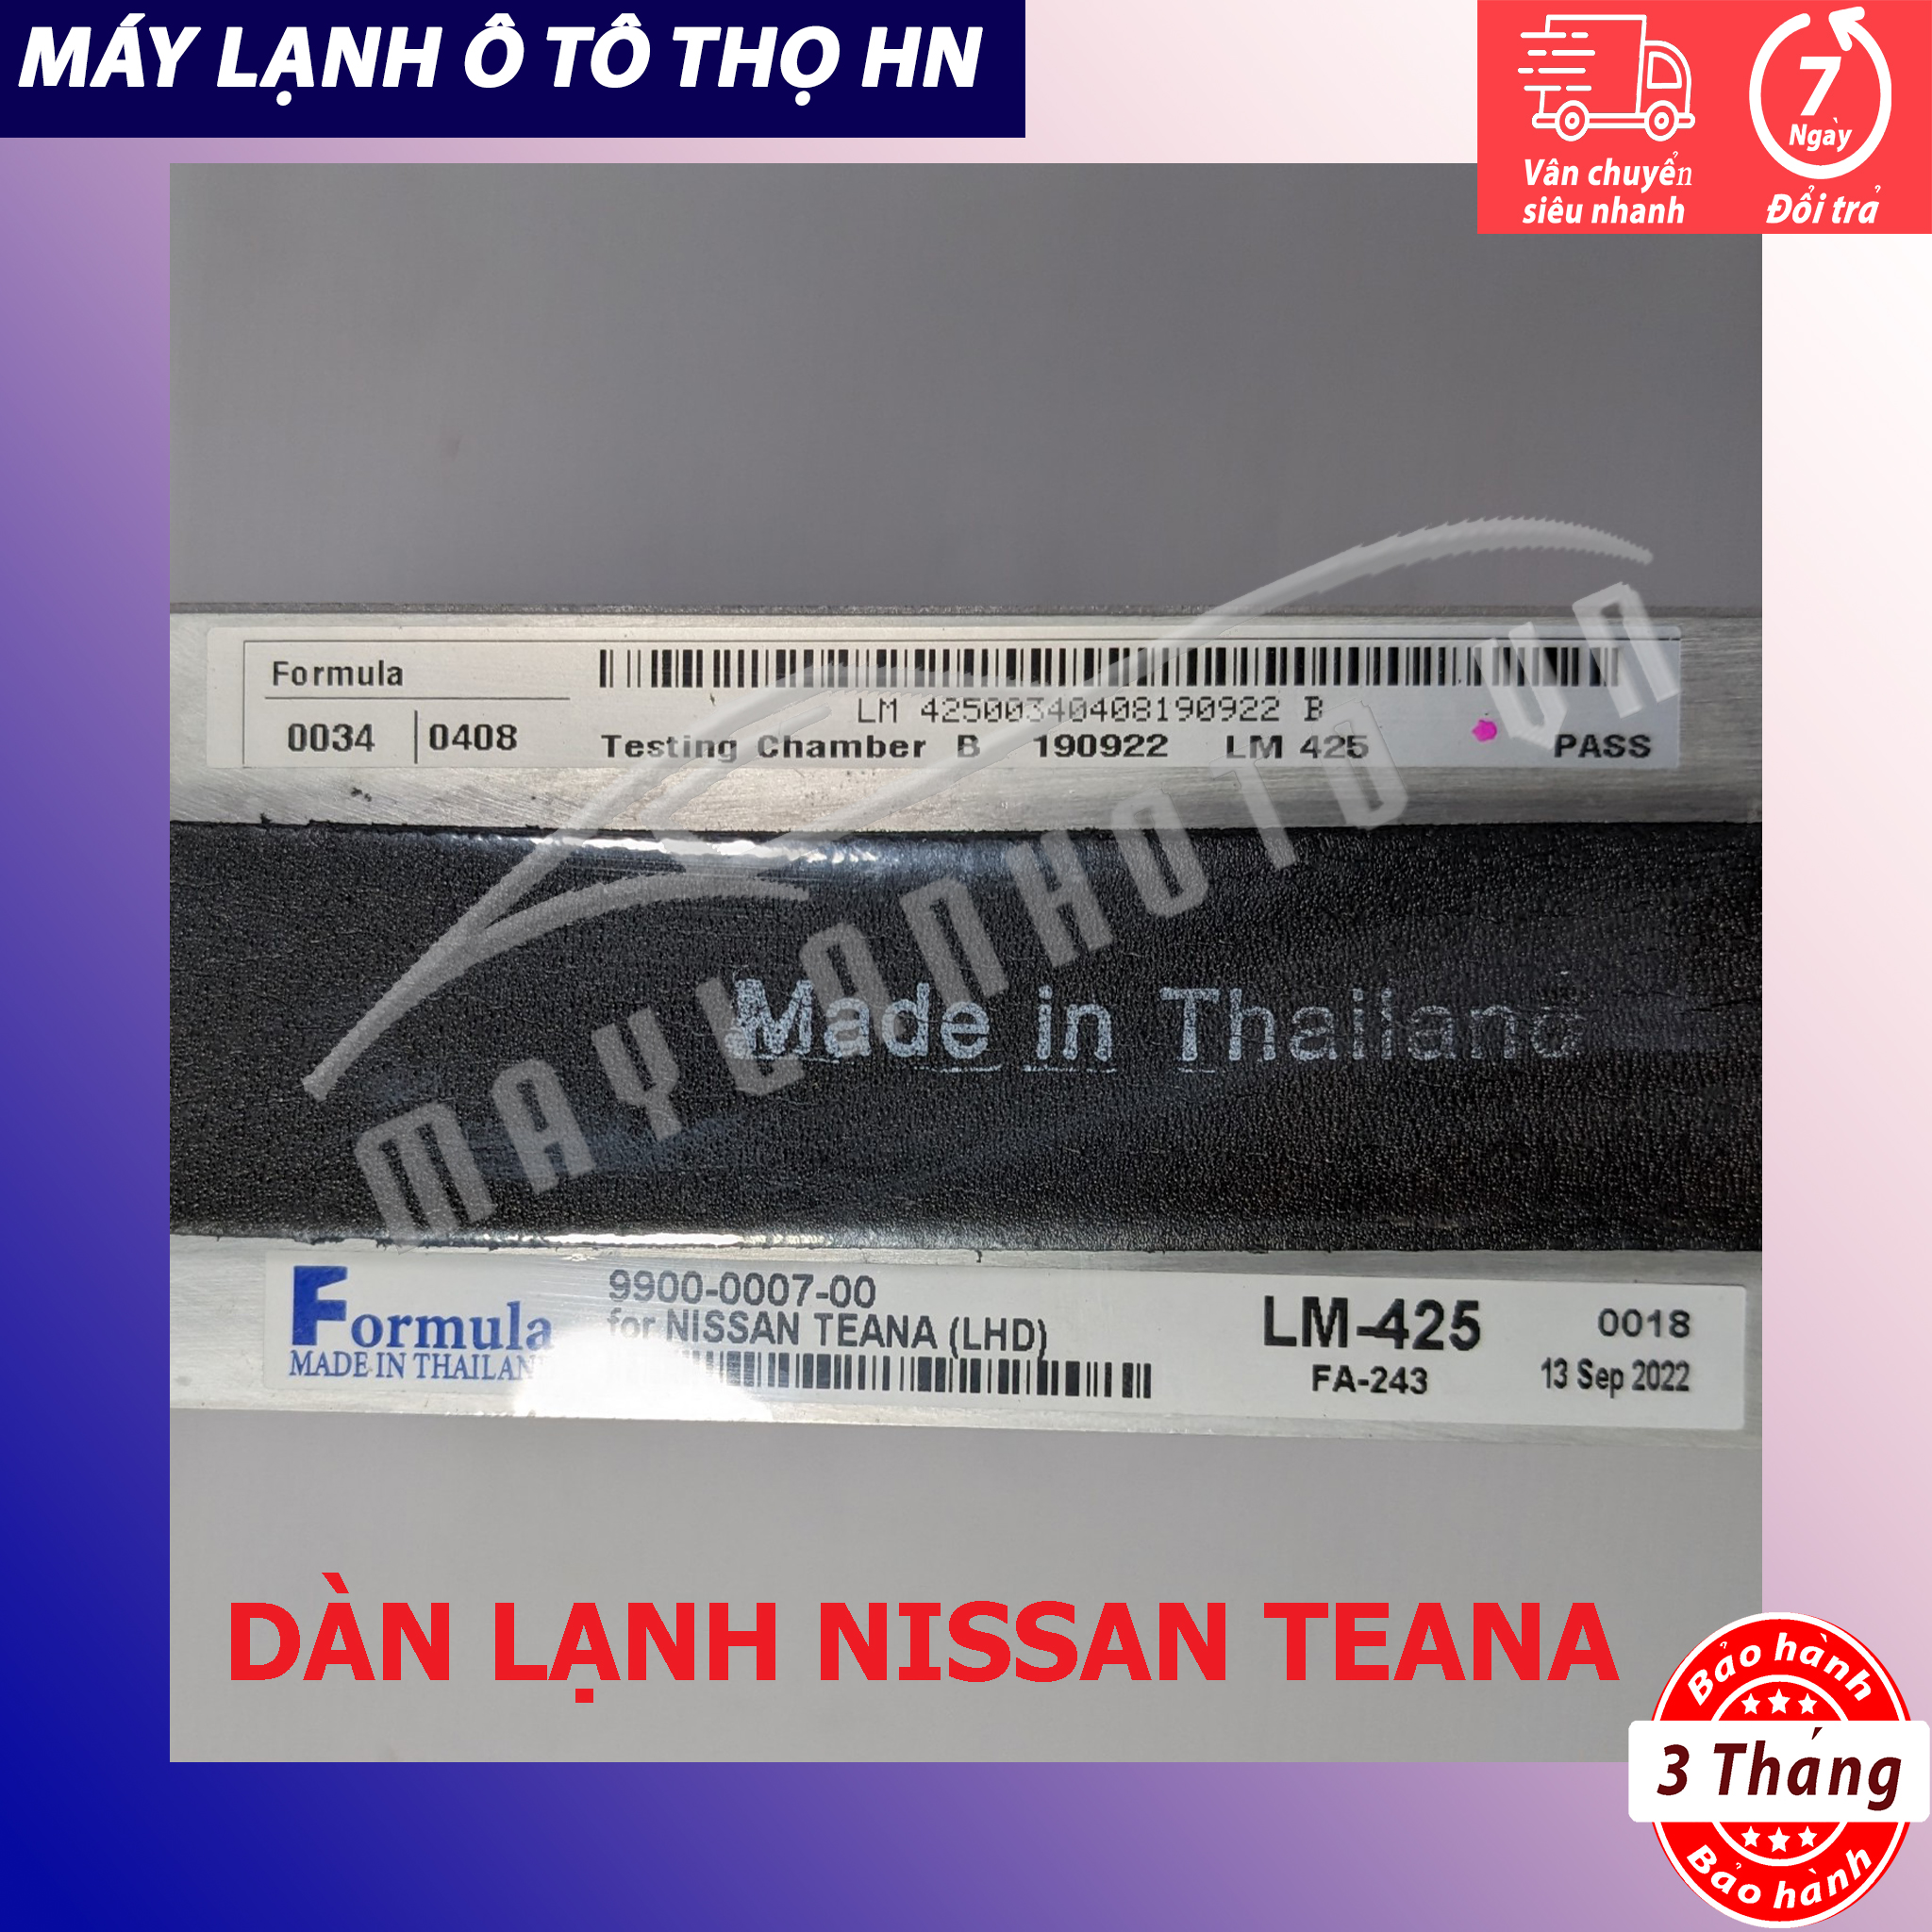 Dàn (giàn) lạnh Nissan Teana 2004 2005 2006 2007 2008 2009 2010 2011 2012 Hàng xịn Thái Lan 04 05 06 07 08 09 10 11 12